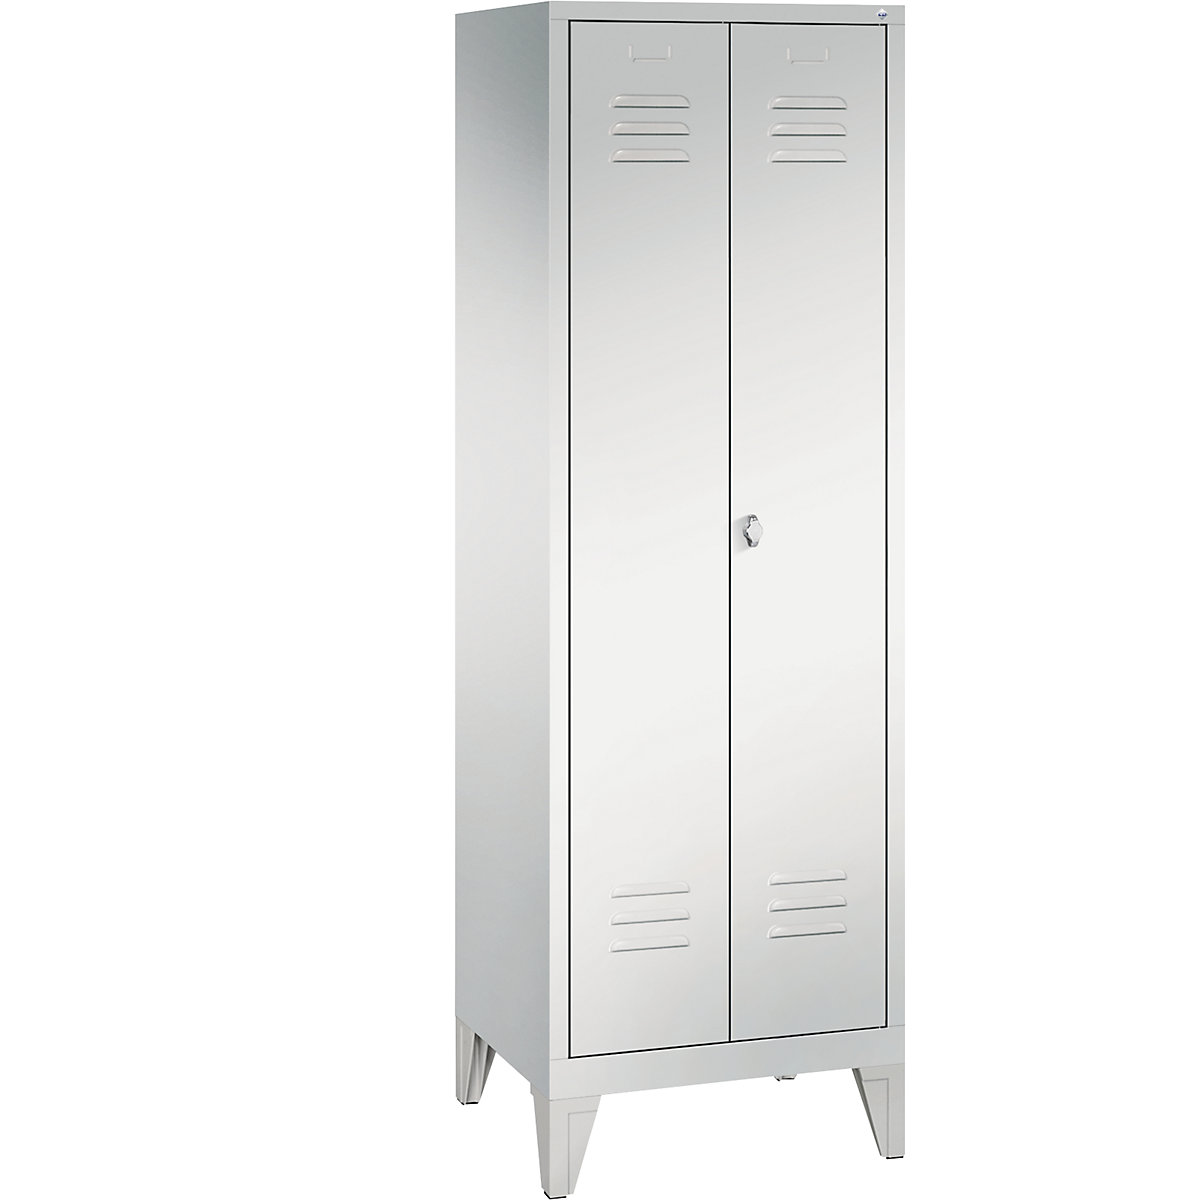 Garderobna omara CLASSIC z nogami in dvokrilnimi vrati na stik – C+P, 2 predelka, širina 300 mm/predelek, svetlo sive barve-3